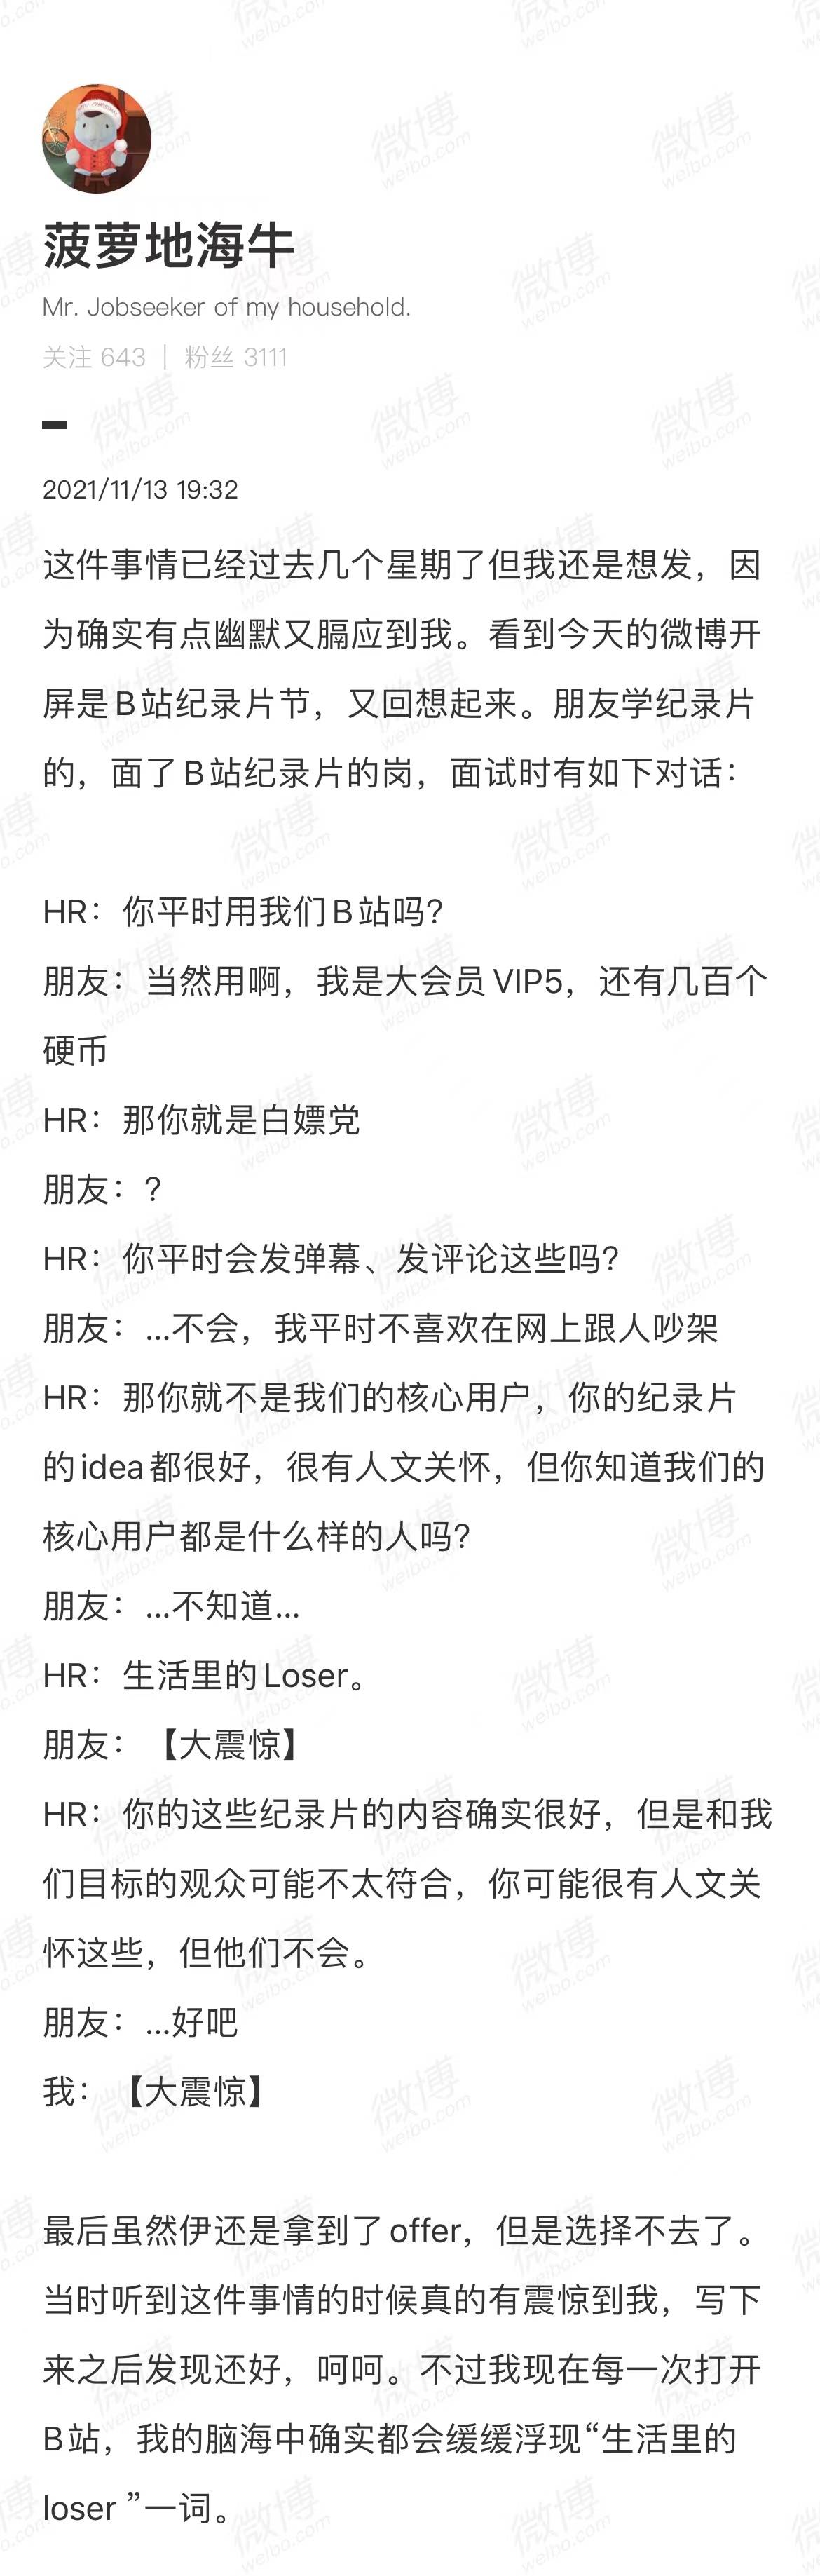 3 4 - La stazione B ha risposto alle risorse umane dicendo che l’utente è un perdente / iPhone 14 utilizza ancora il vecchio chip per migliorare le prestazioni / Qudian Luo Min ha lasciato Douyin